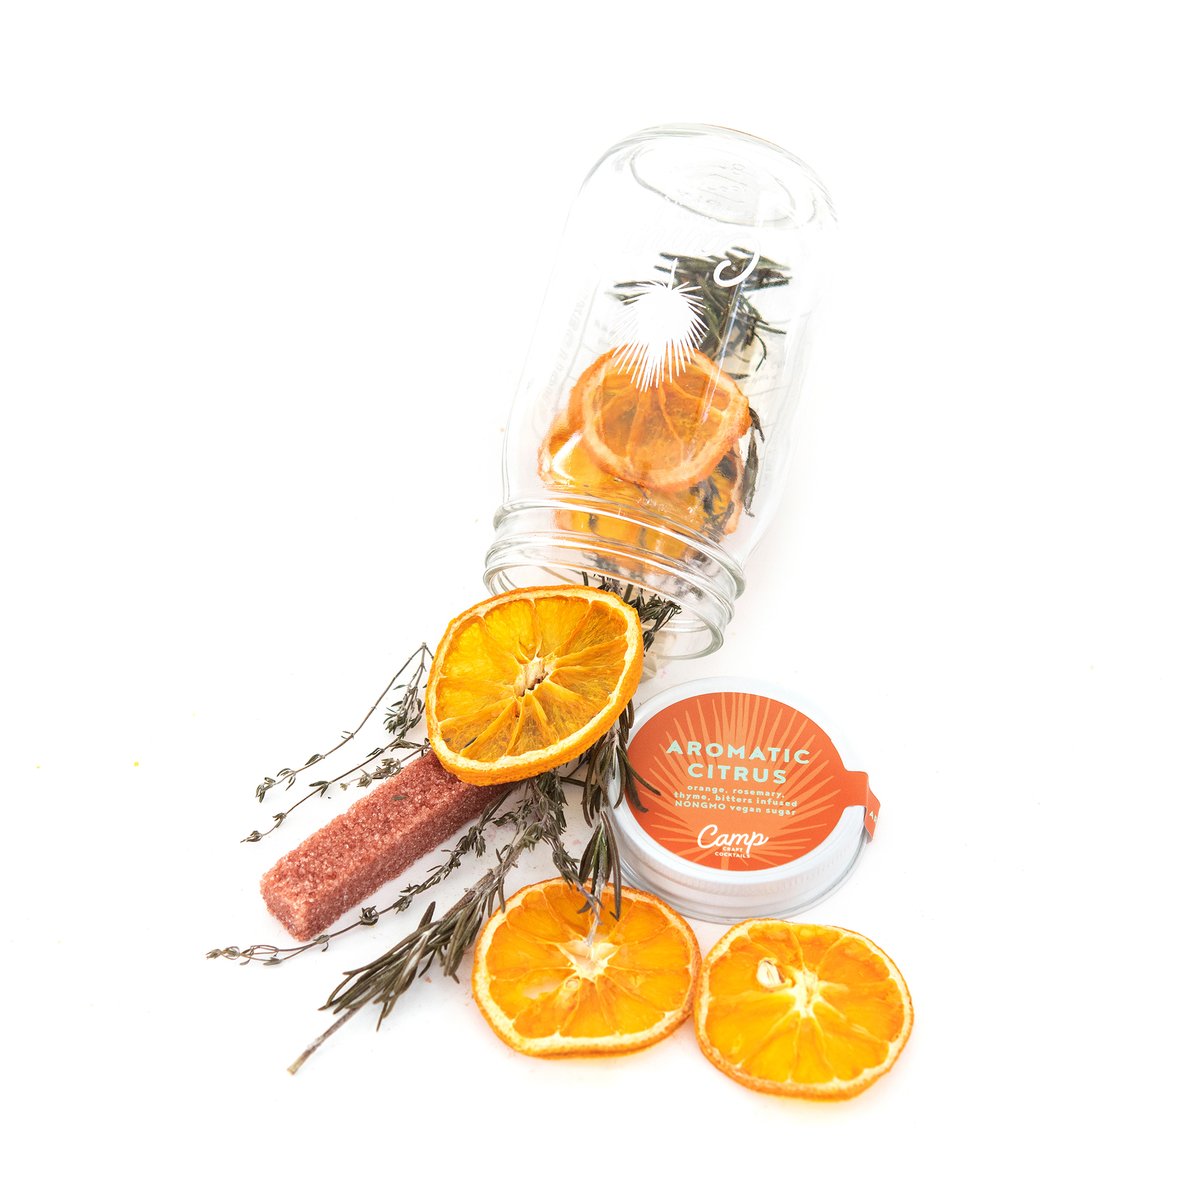 Aromatic Citrus Craft Cocktail